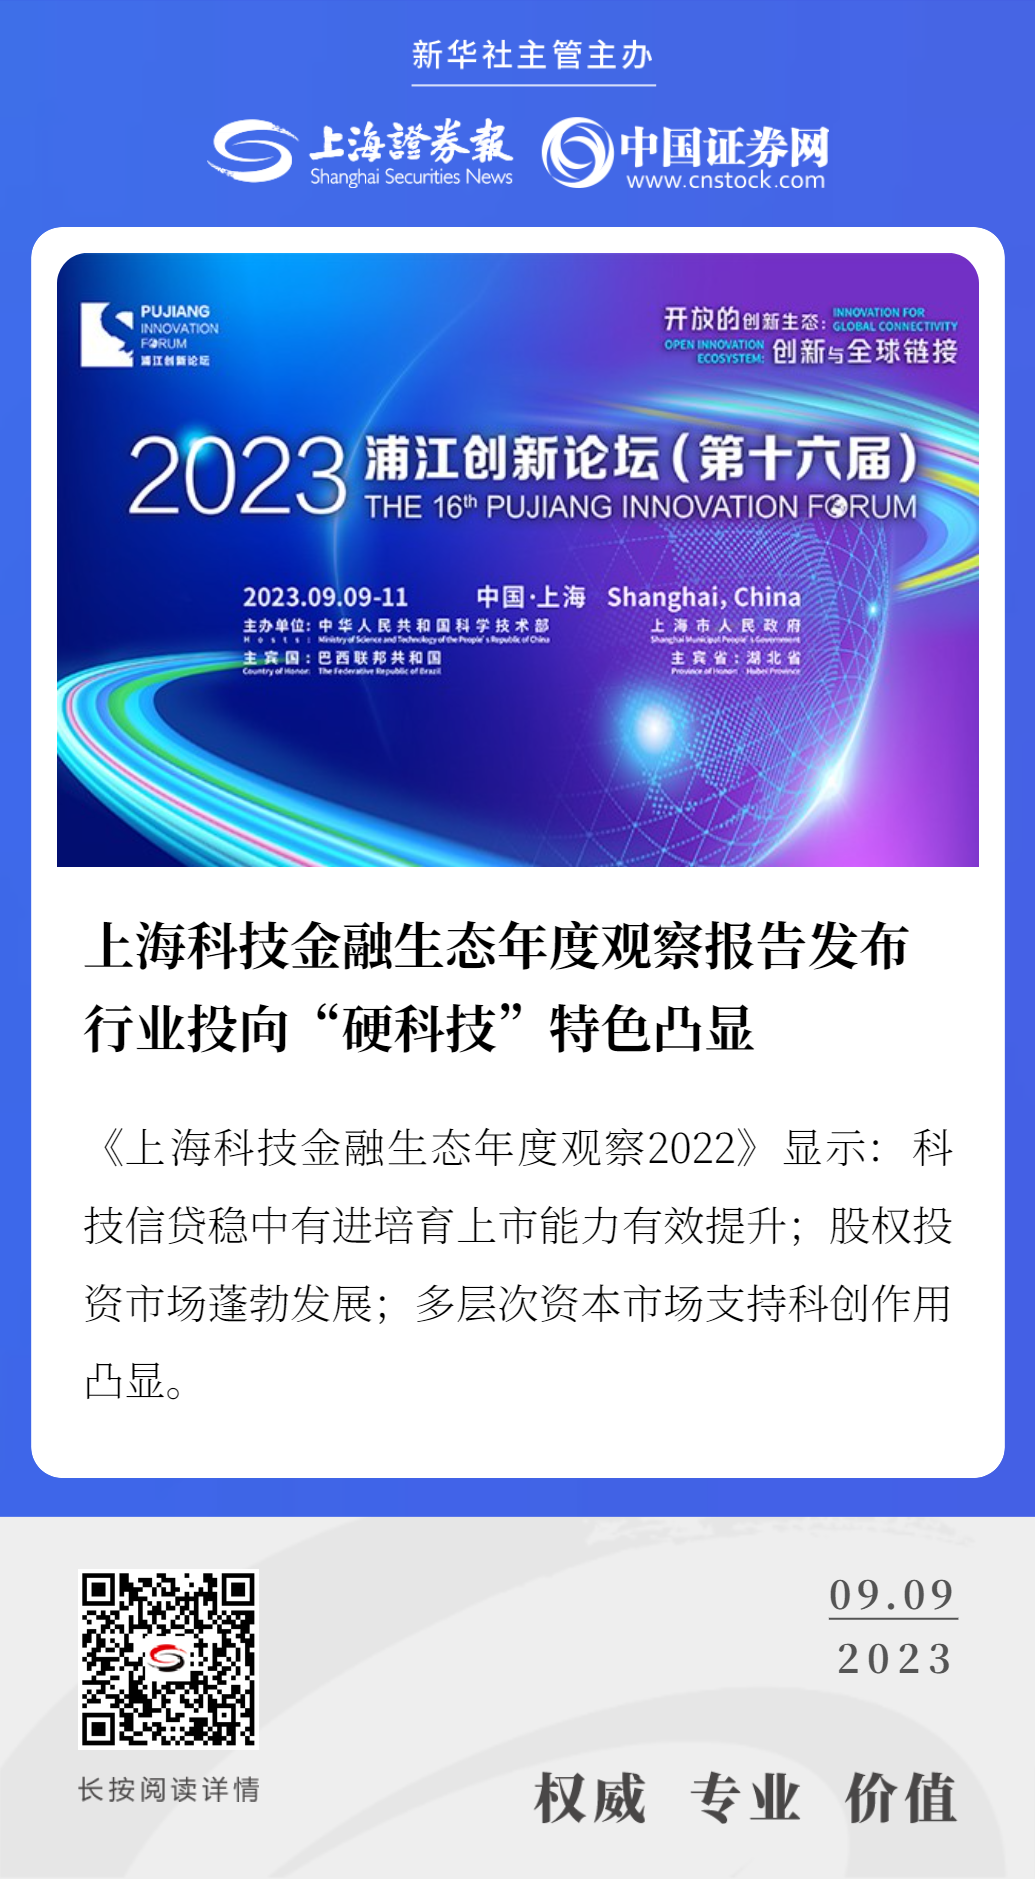 上海科技金融生态年度观察报告发布 行业投向“硬科技”特色凸显